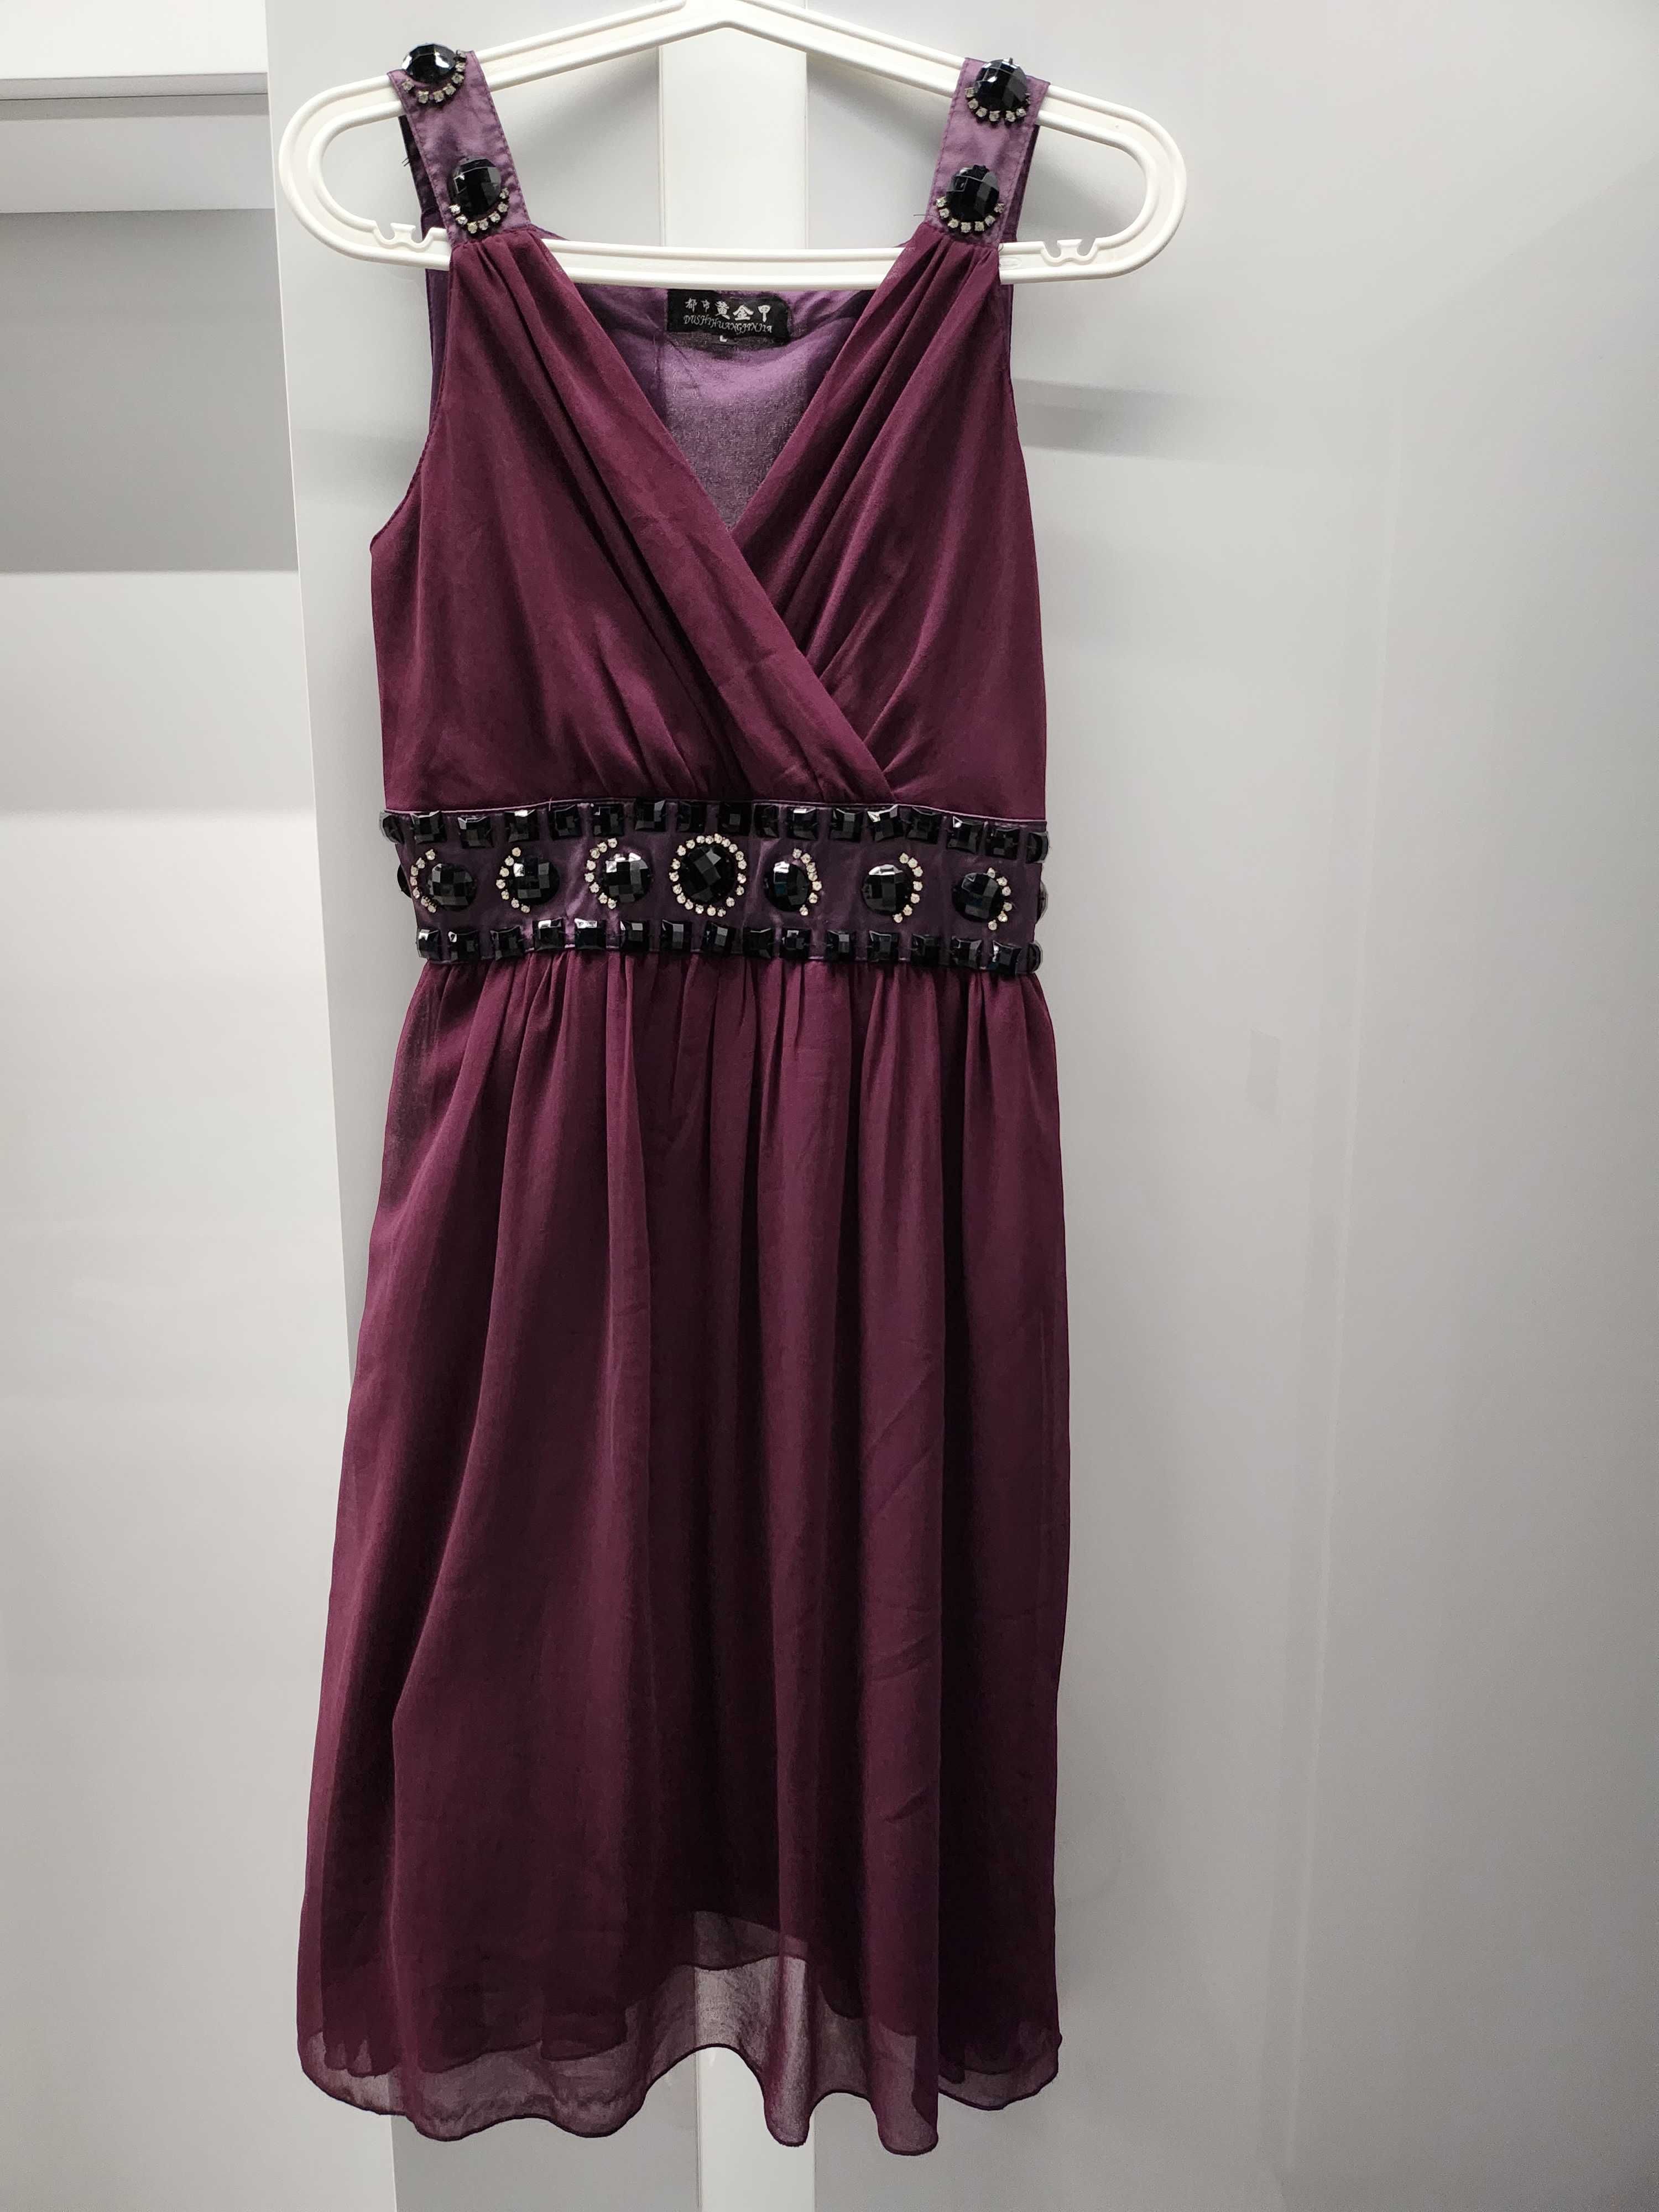 Sukienka szyfonowa koktailowa zdobiona kamieniami fioletowa r. M/L